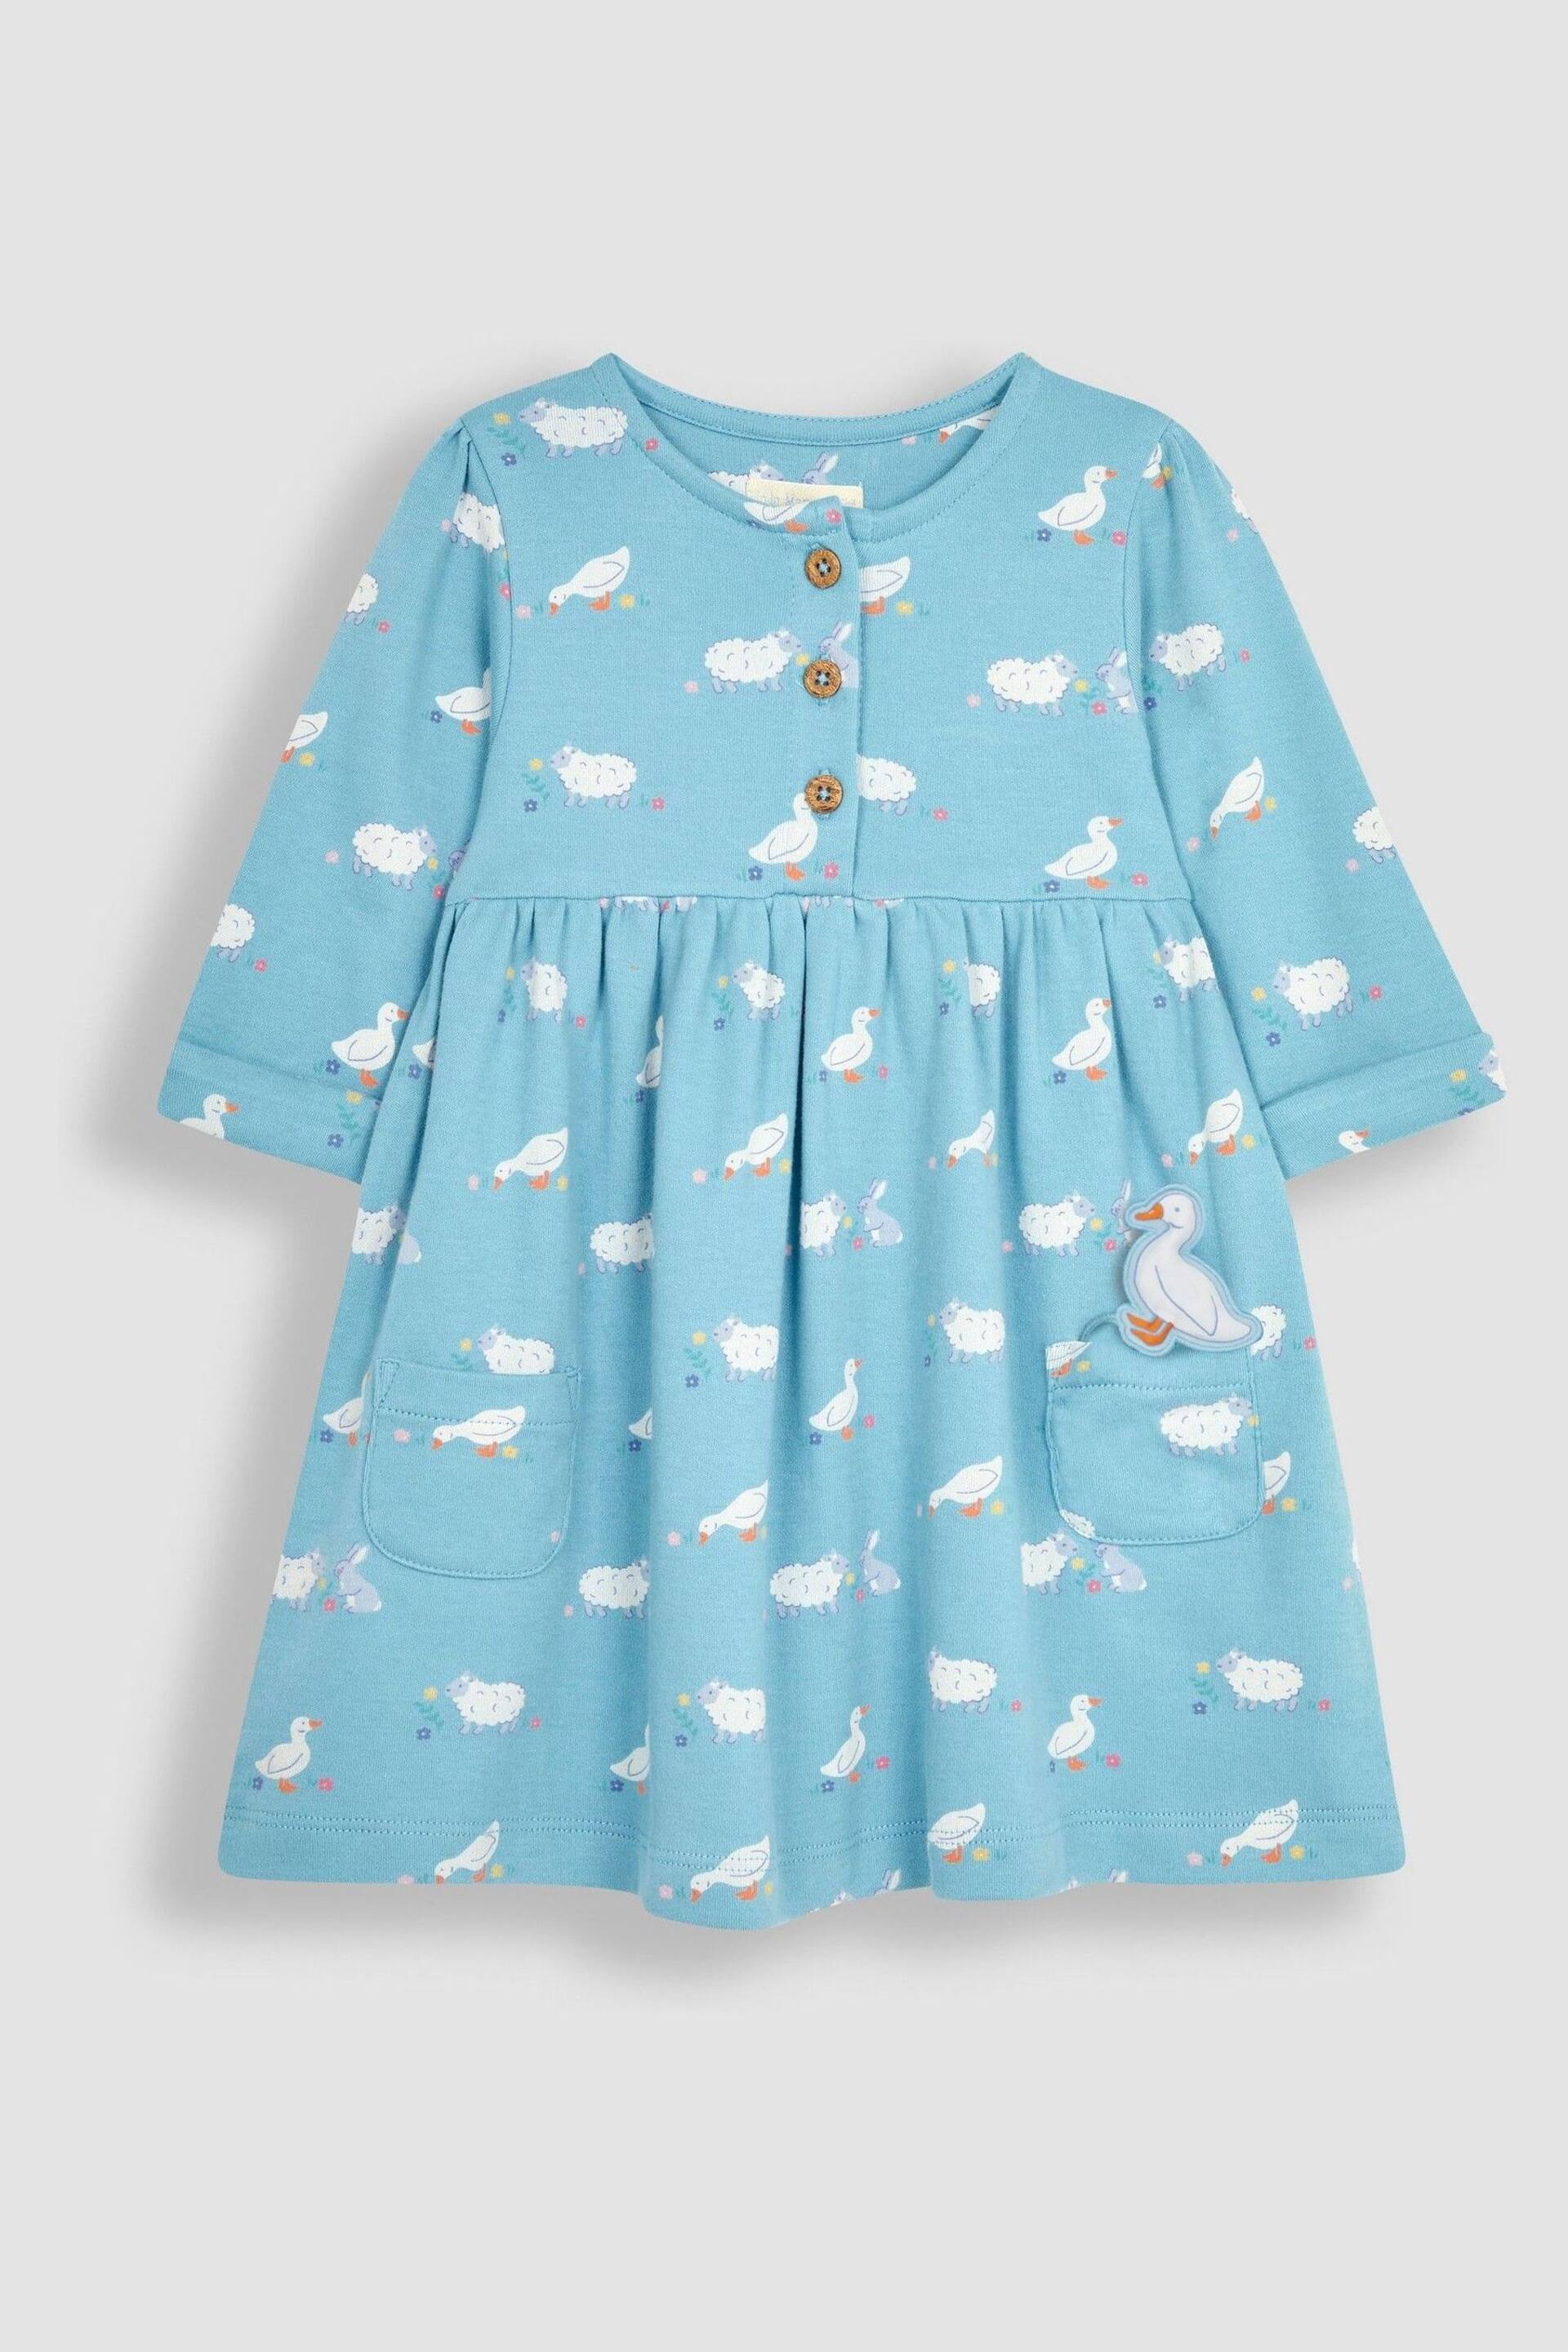 JoJo Maman Bébé Blue Duck & Friends Button Front Pet In Pocket Long Sleeve Jersey Dress - Image 1 of 3